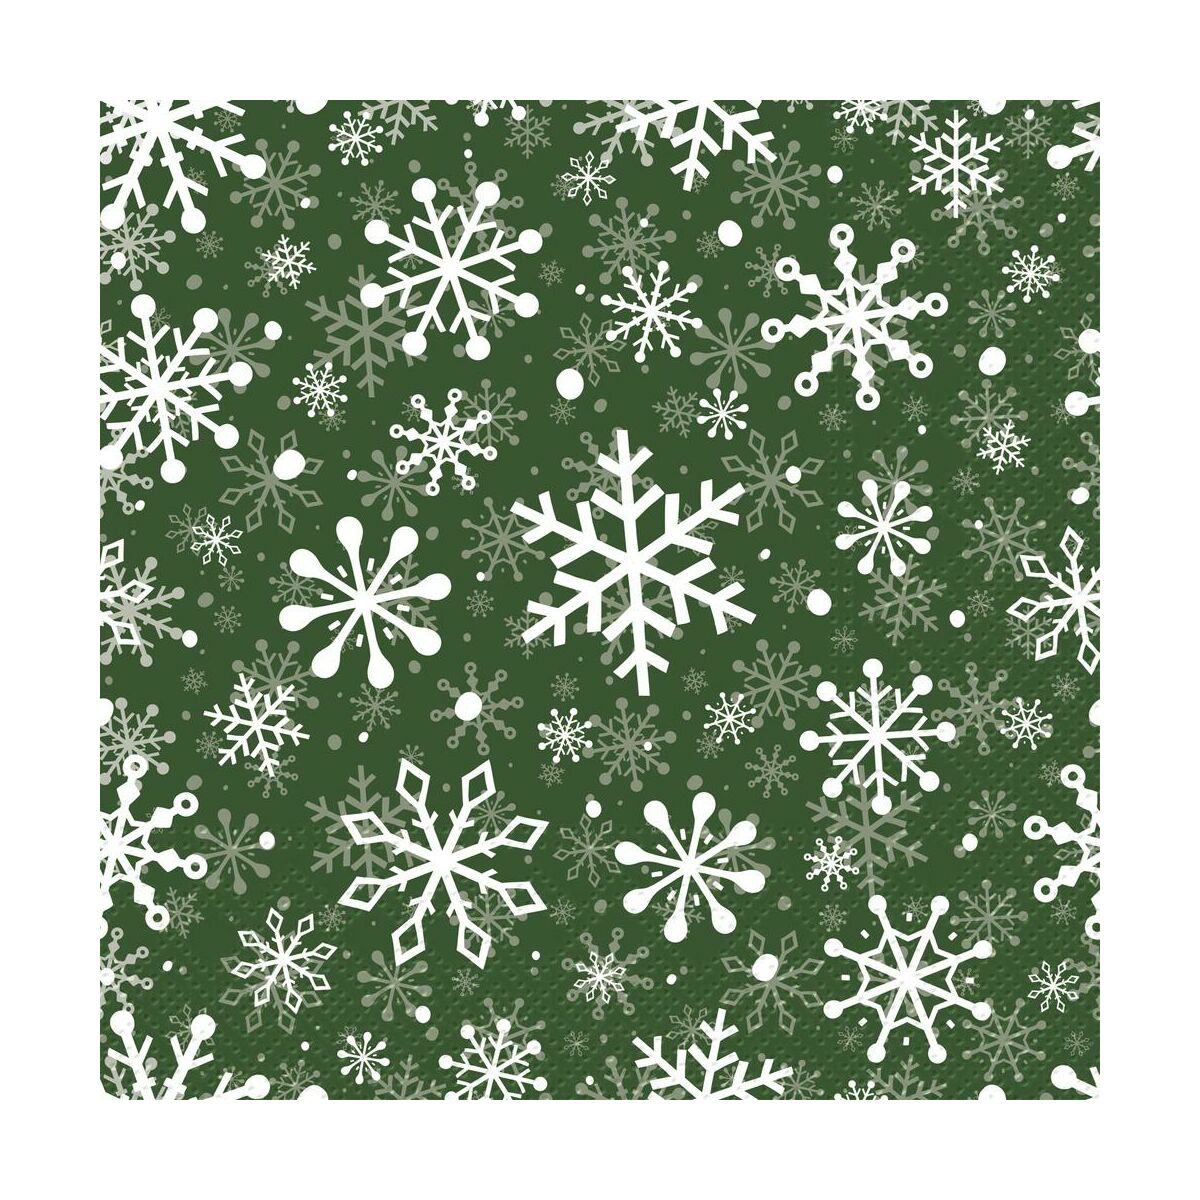 Serwetki świąteczne Snowflakes zielone 33 x 33 cm 20 szt.